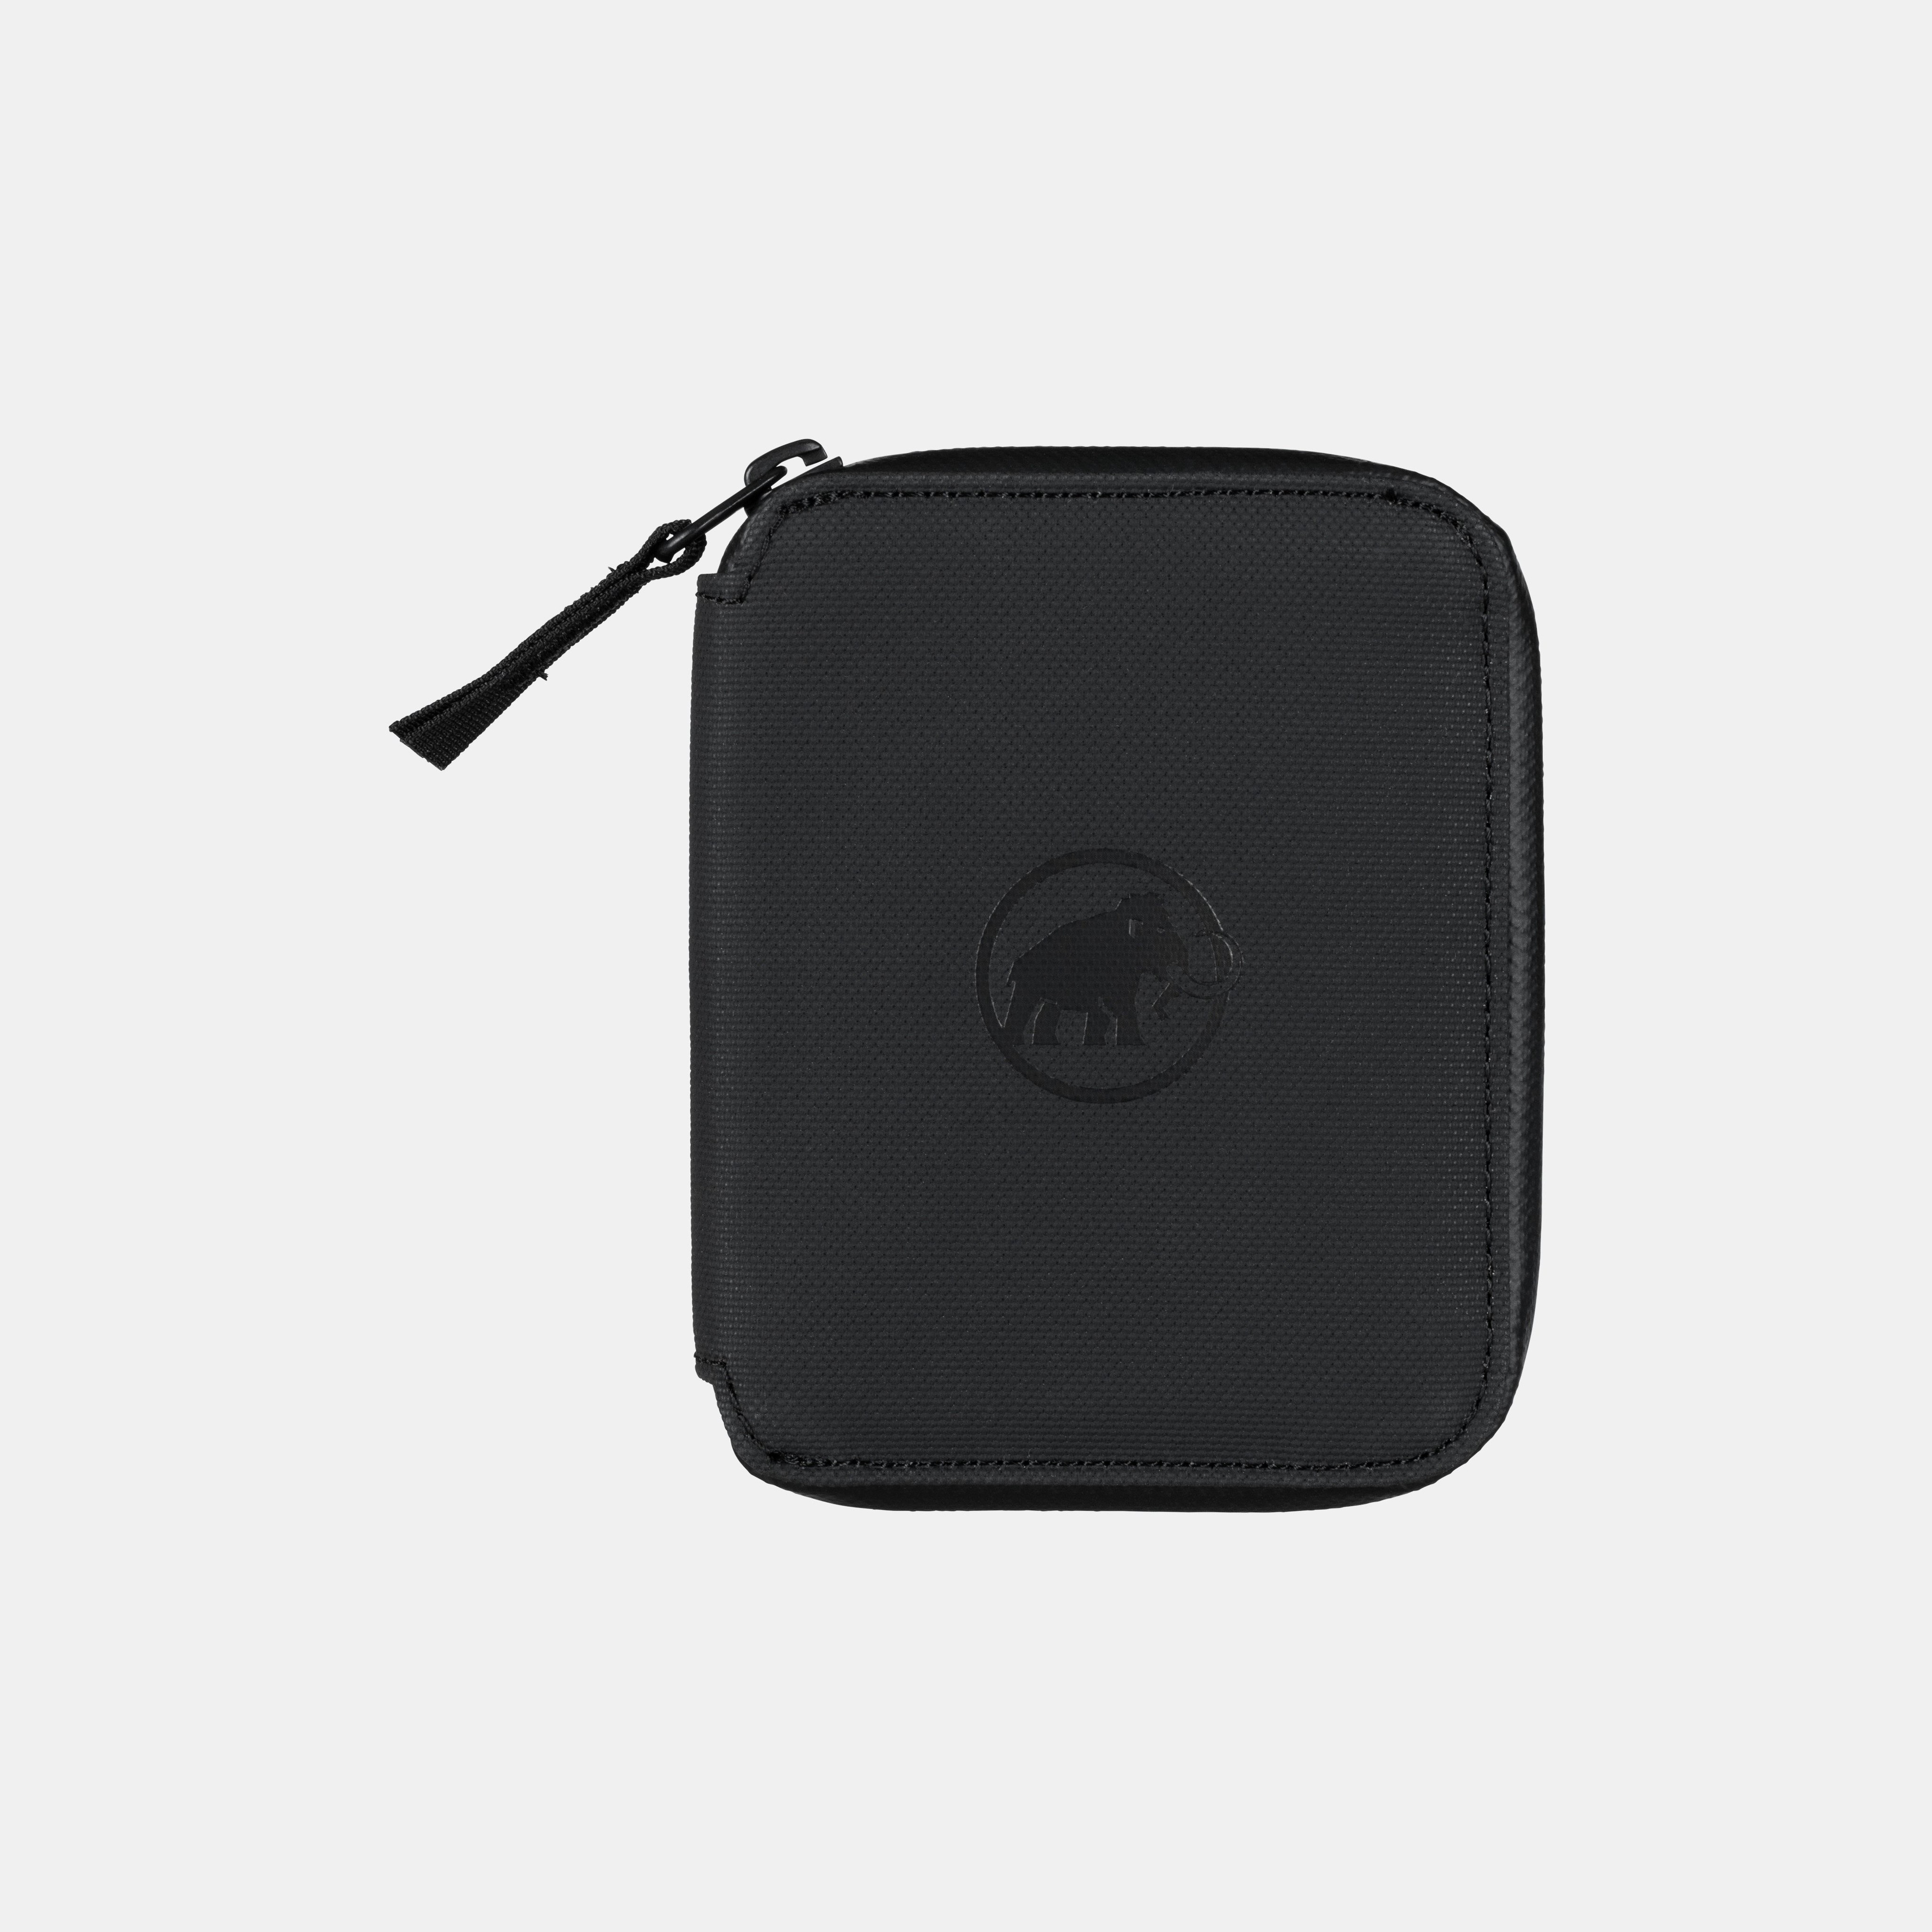 Seon Zip Wallet product image